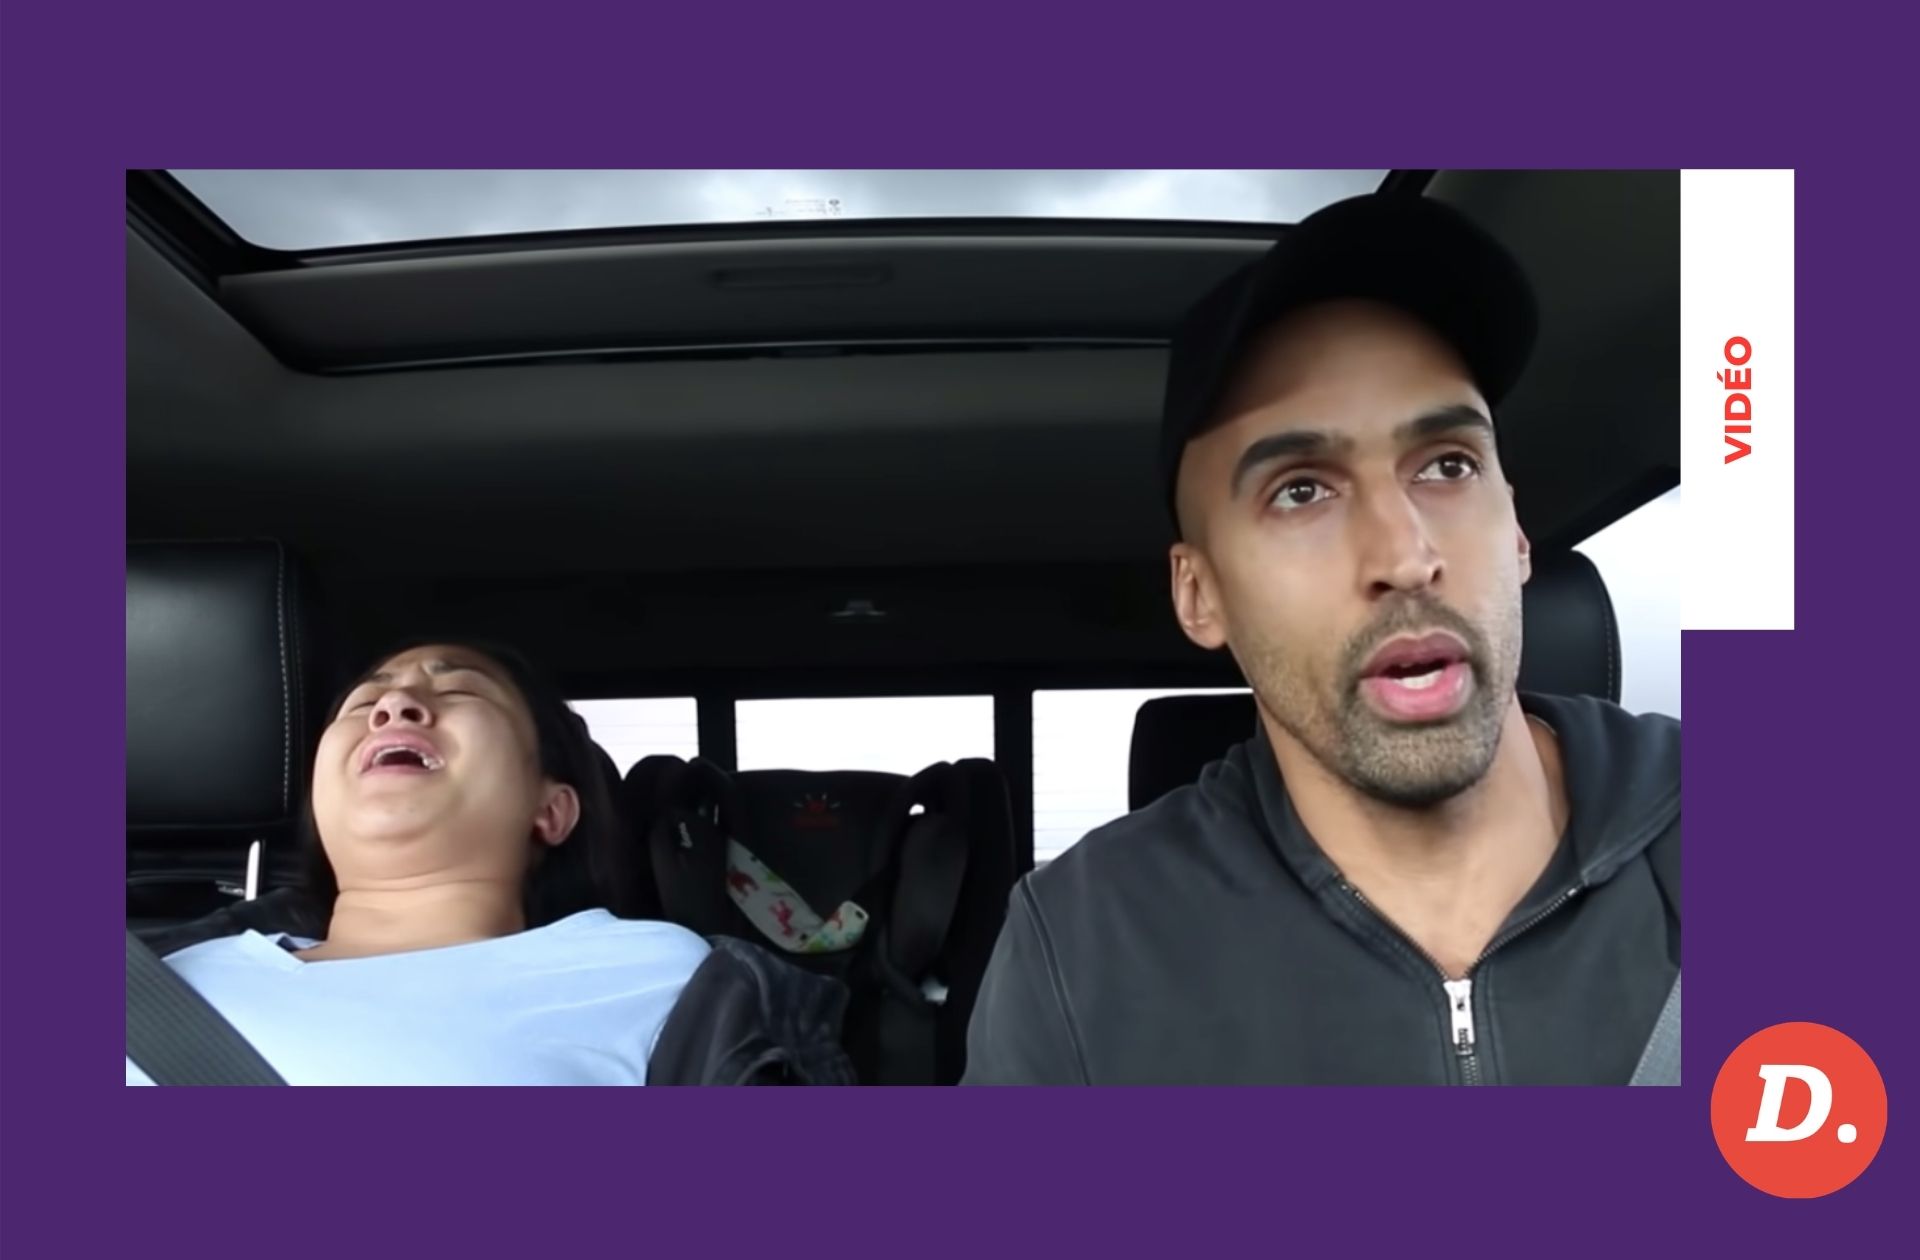 Cette vidéo d’accouchement dans une voiture va changer votre vision de la naissance